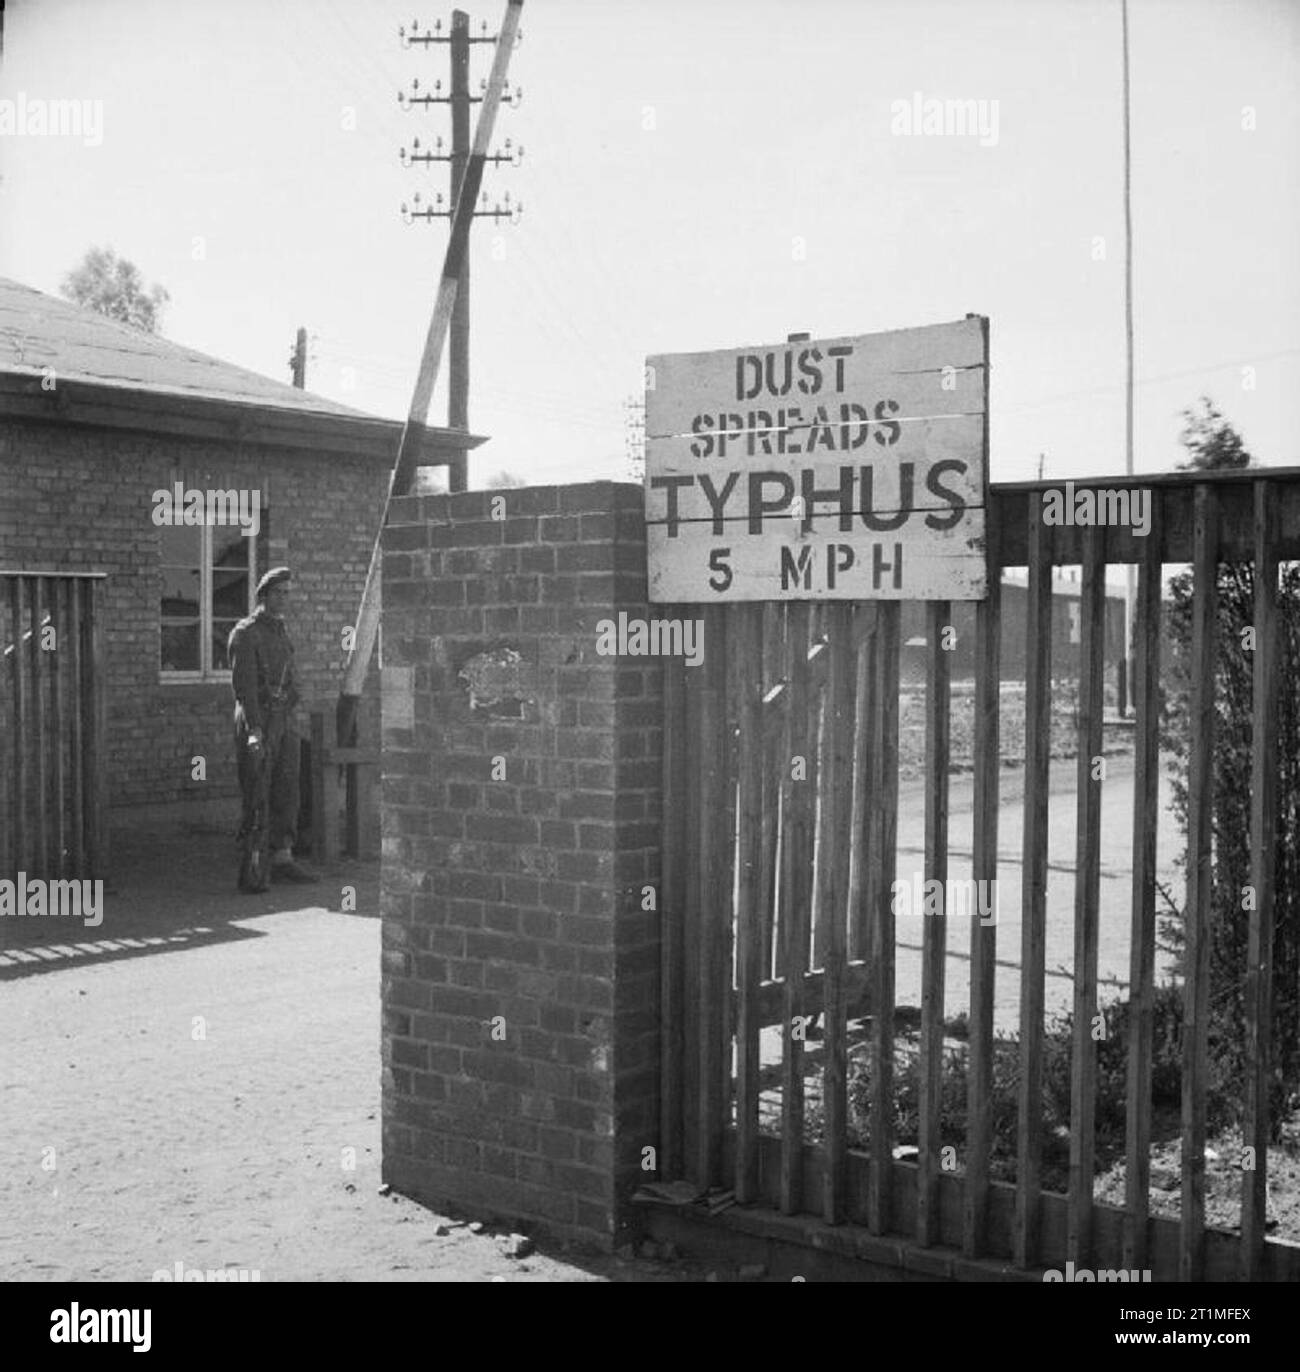 Die Befreiung der Konzentrationslager Bergen Belsen, April 1945 ein Schild am Eingang Belsen lesen 'Dust verbreitet typhus - 5 mph". Diese Geschwindigkeitsbegrenzung auferlegt wurde, um die Verbreitung von Staub, die die Läuse, die mit Typhus befallen wurden, zu verhindern. Stockfoto